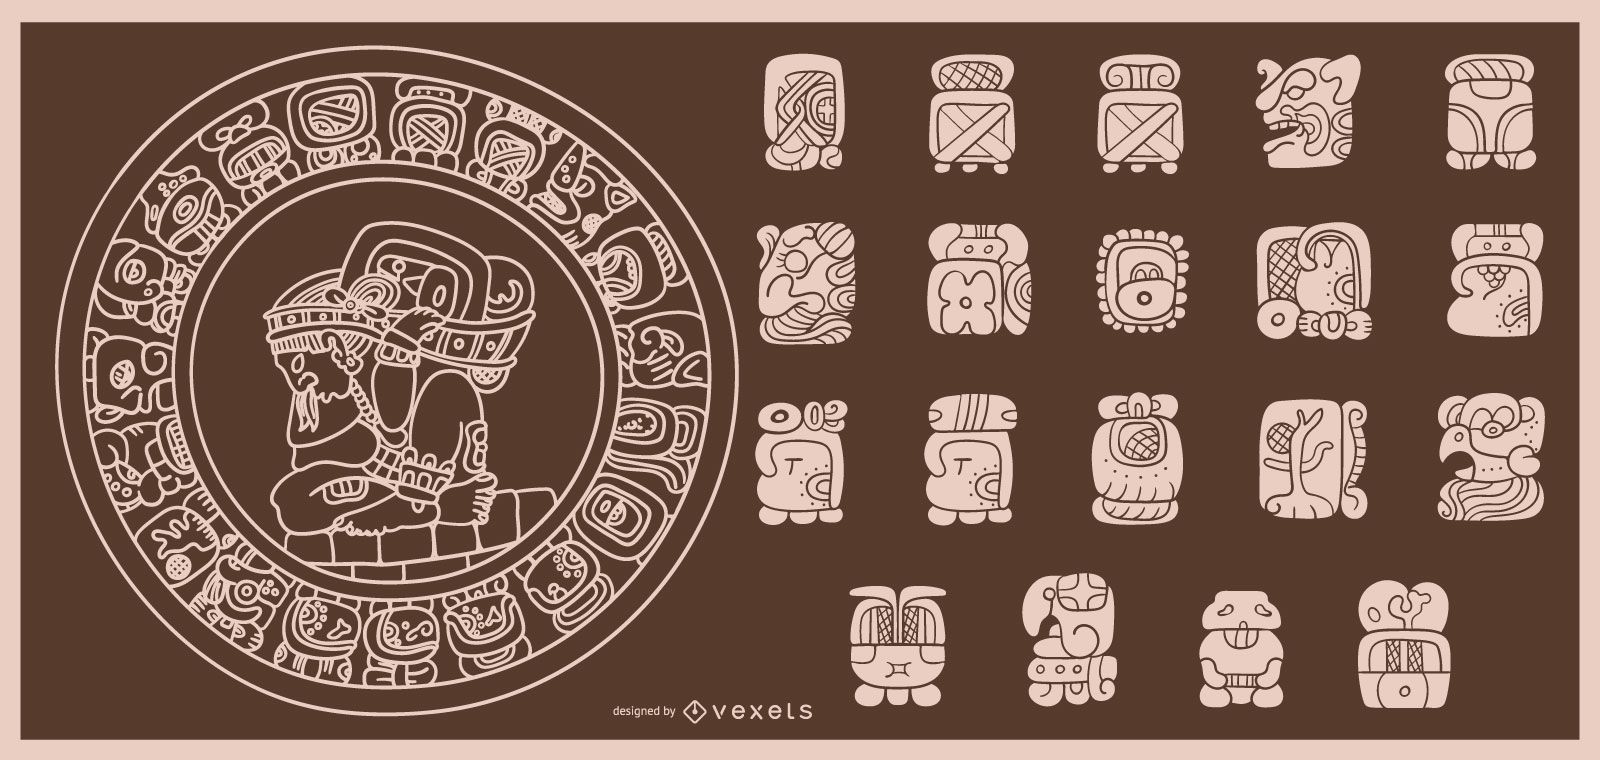 Dise?o de trazo de calendario maya